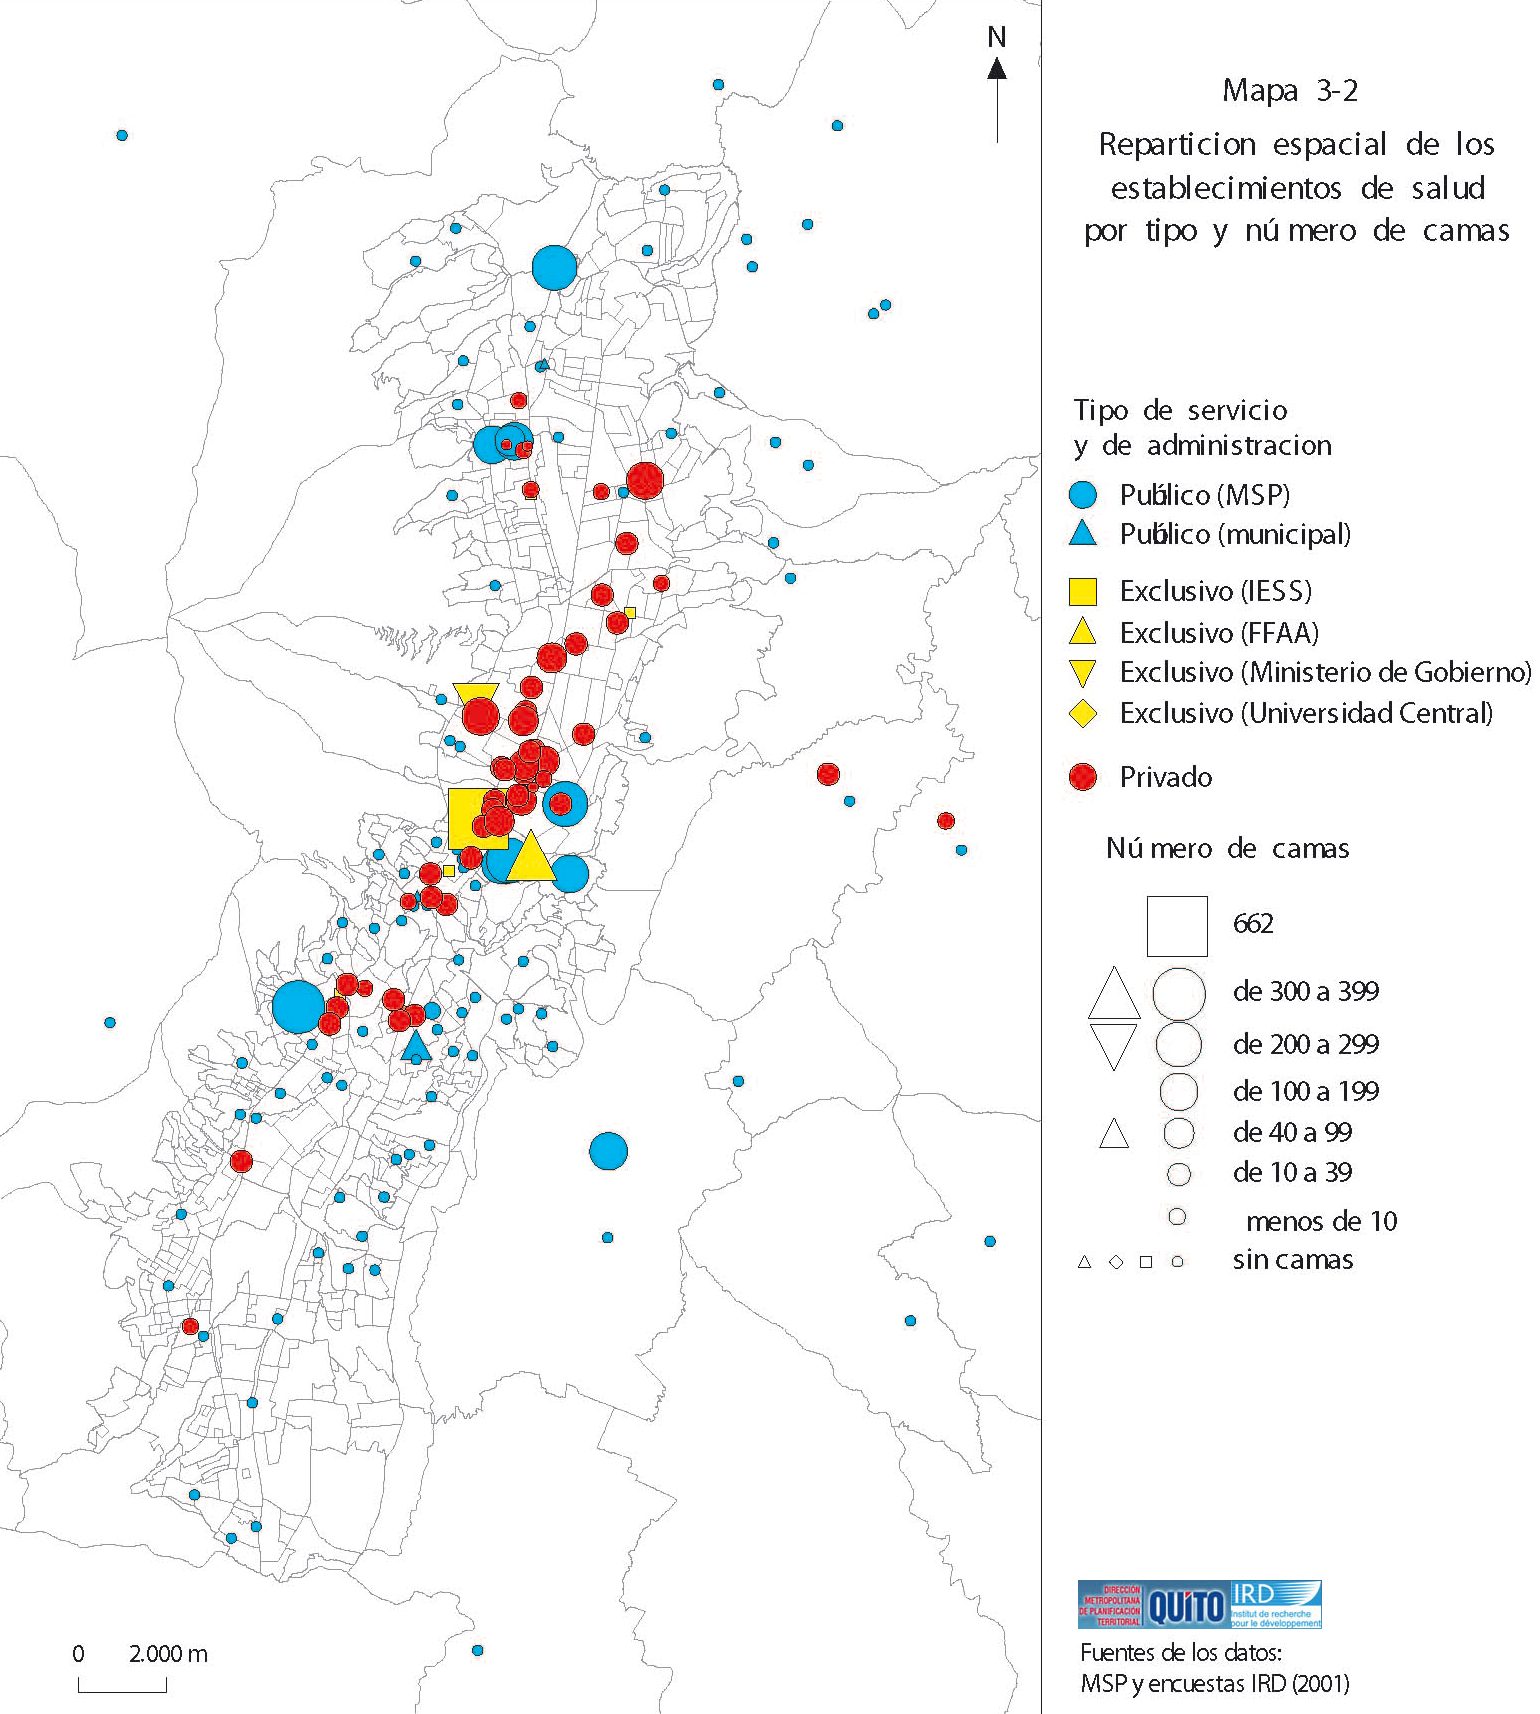 Mapa de Los establecimientos de salud por tipo y número de camas en el Distrito Metropolitano de Quito 2001